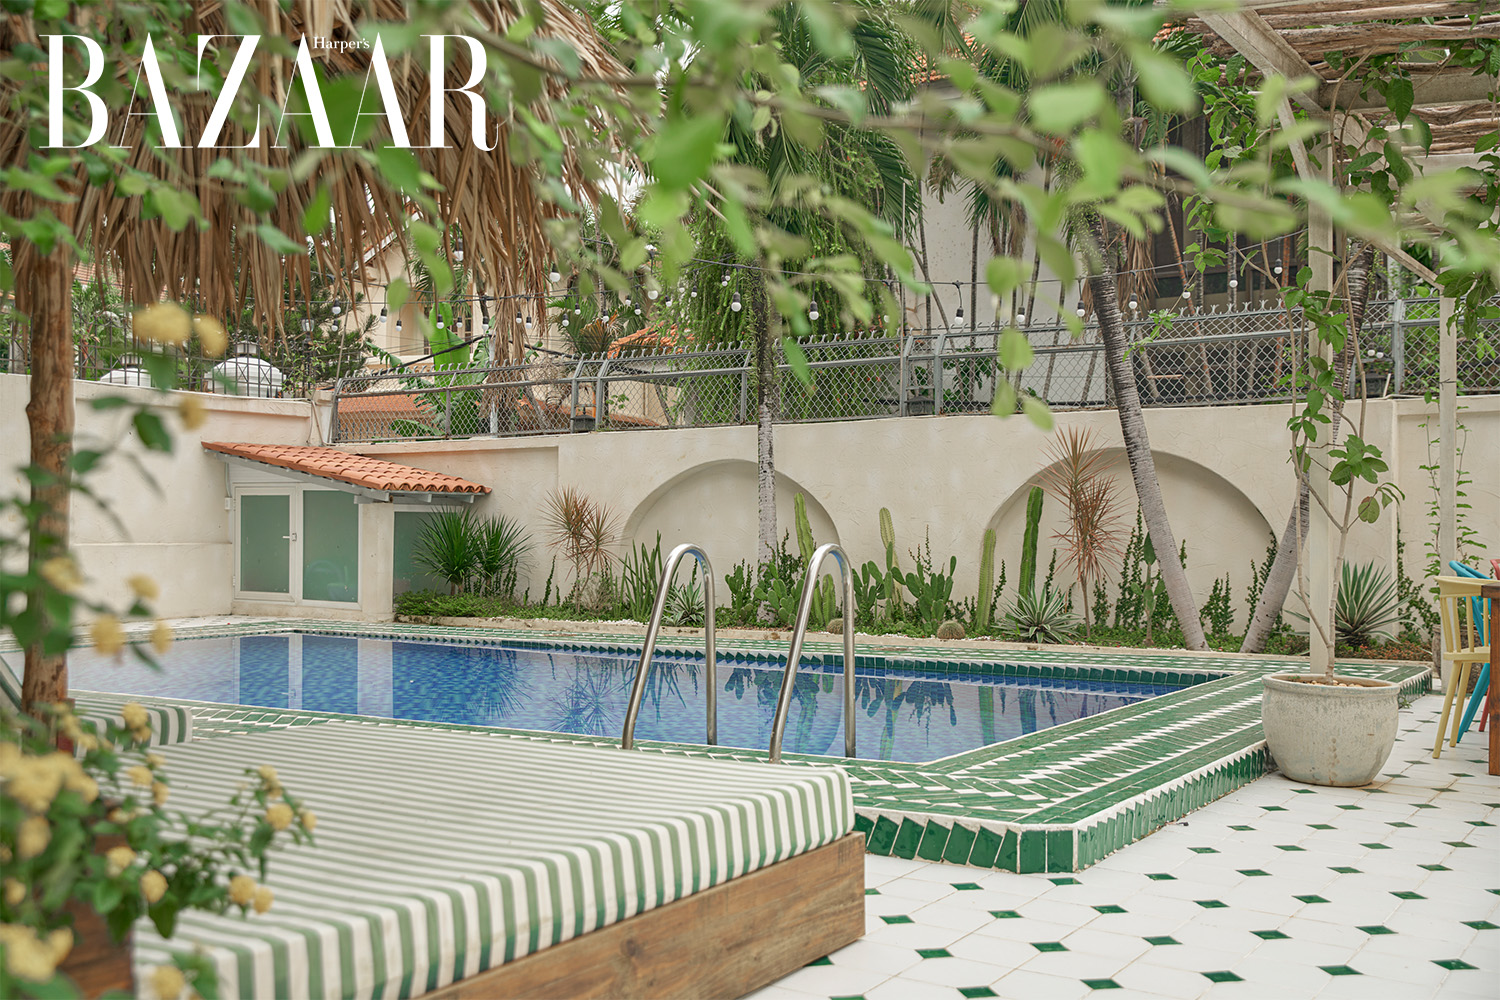 Harpers Bazaar nha dep cua doanh nhan Minh Beta 10 - Ngôi nhà xanh mát của doanh nhân Minh Beta